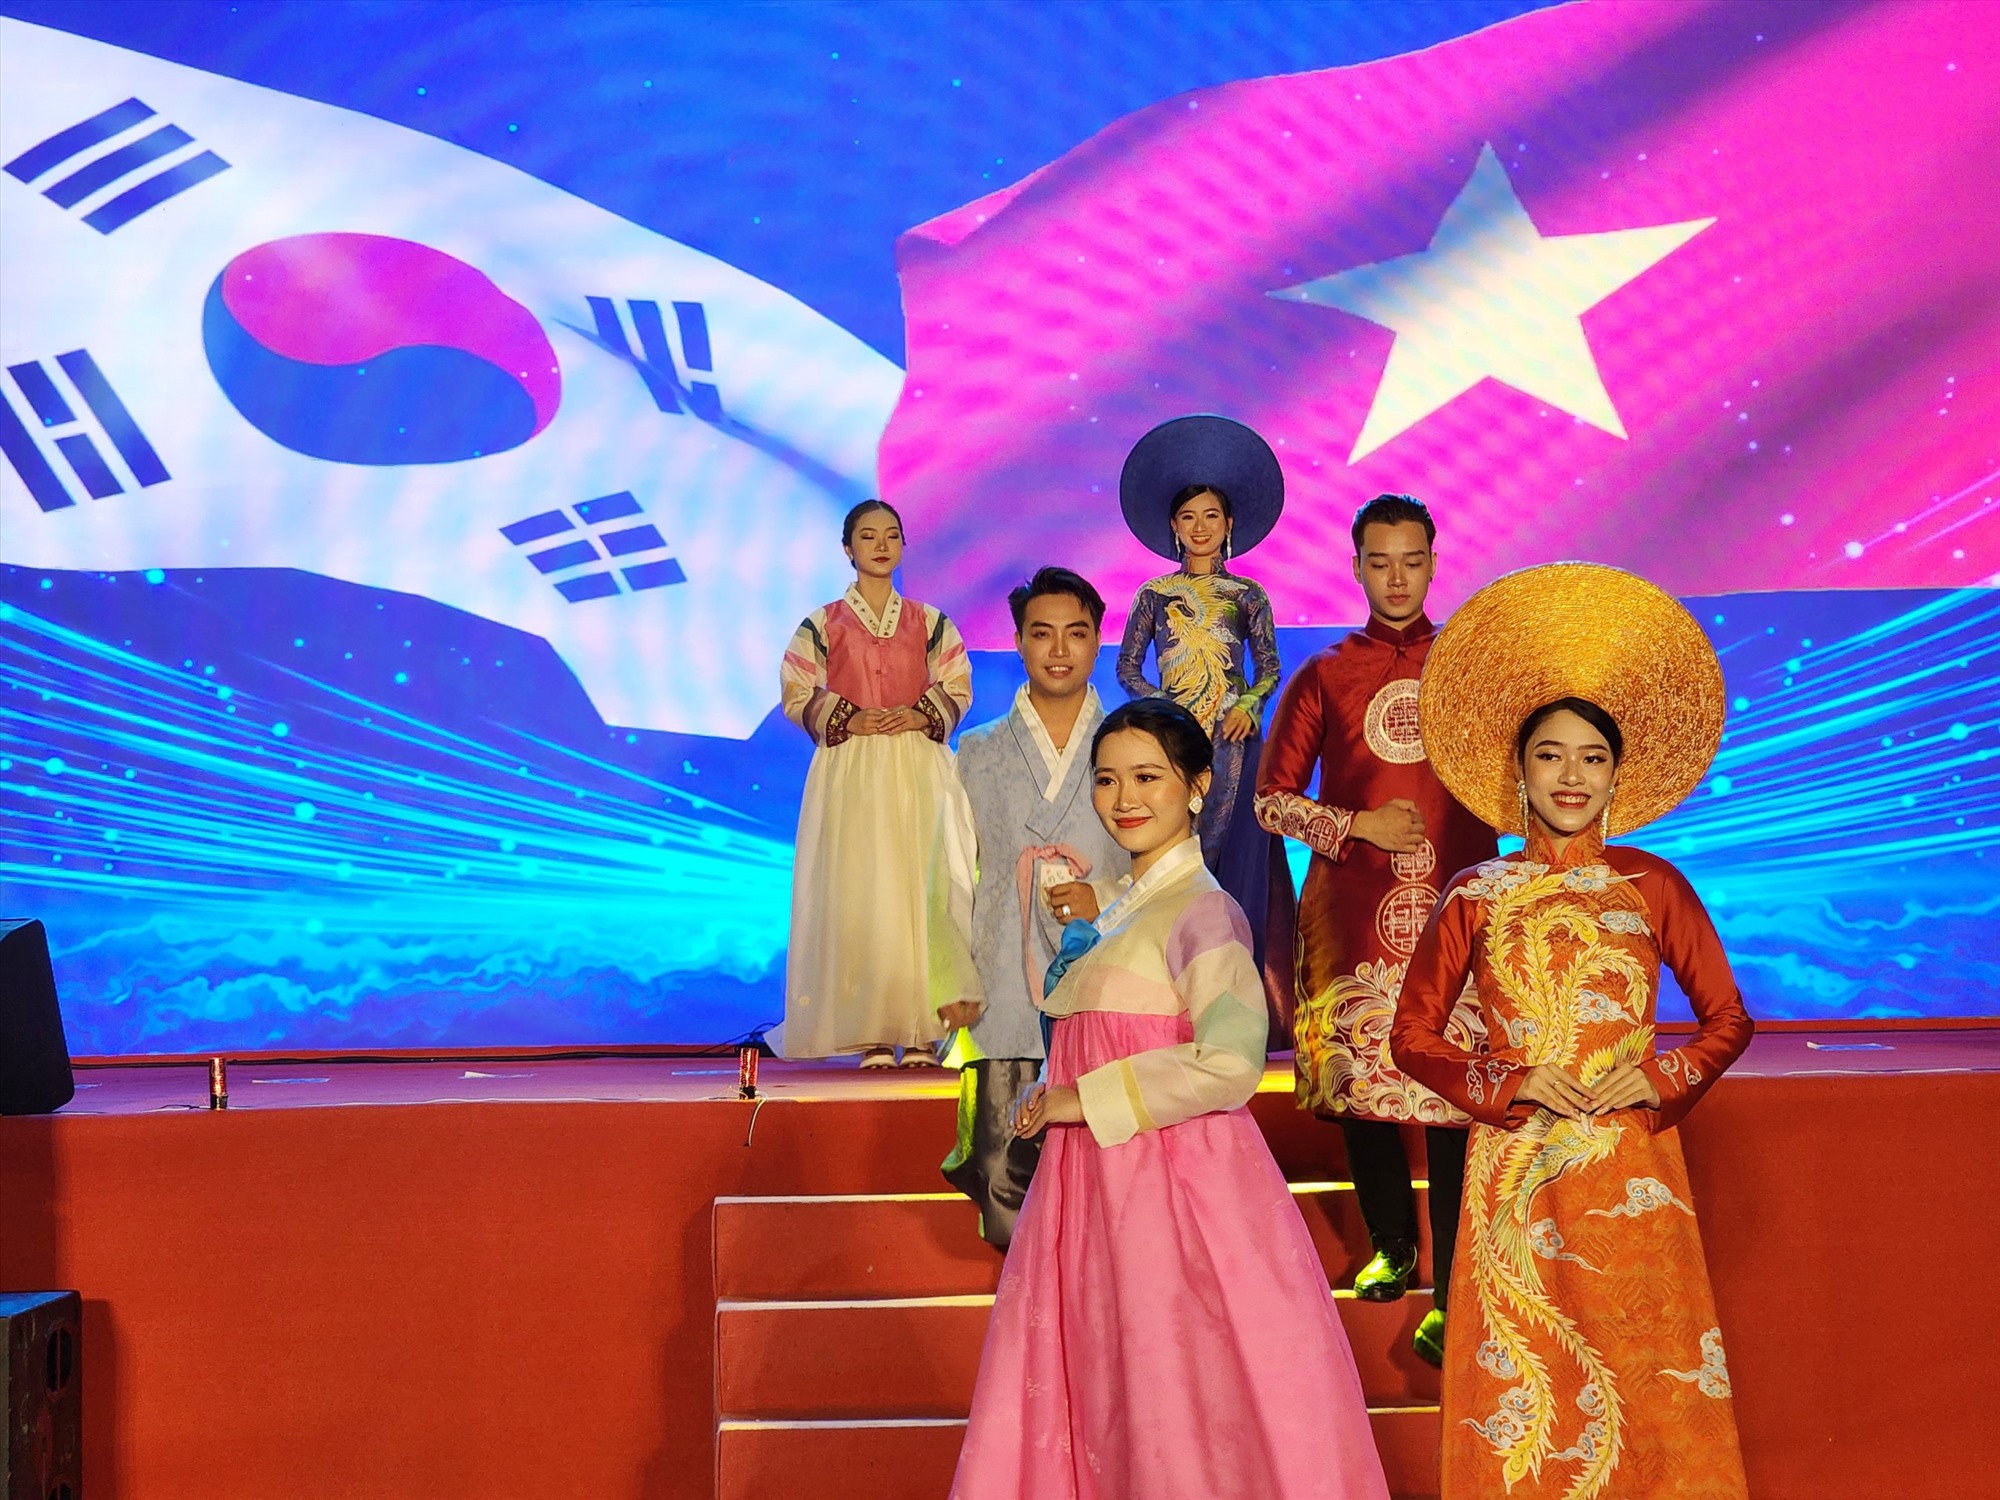 Chương trình biểu diễn trang phục và nghệ thuật truyền thống Hàn Quốc tại lễ hội. Ảnh: Thùy Trang